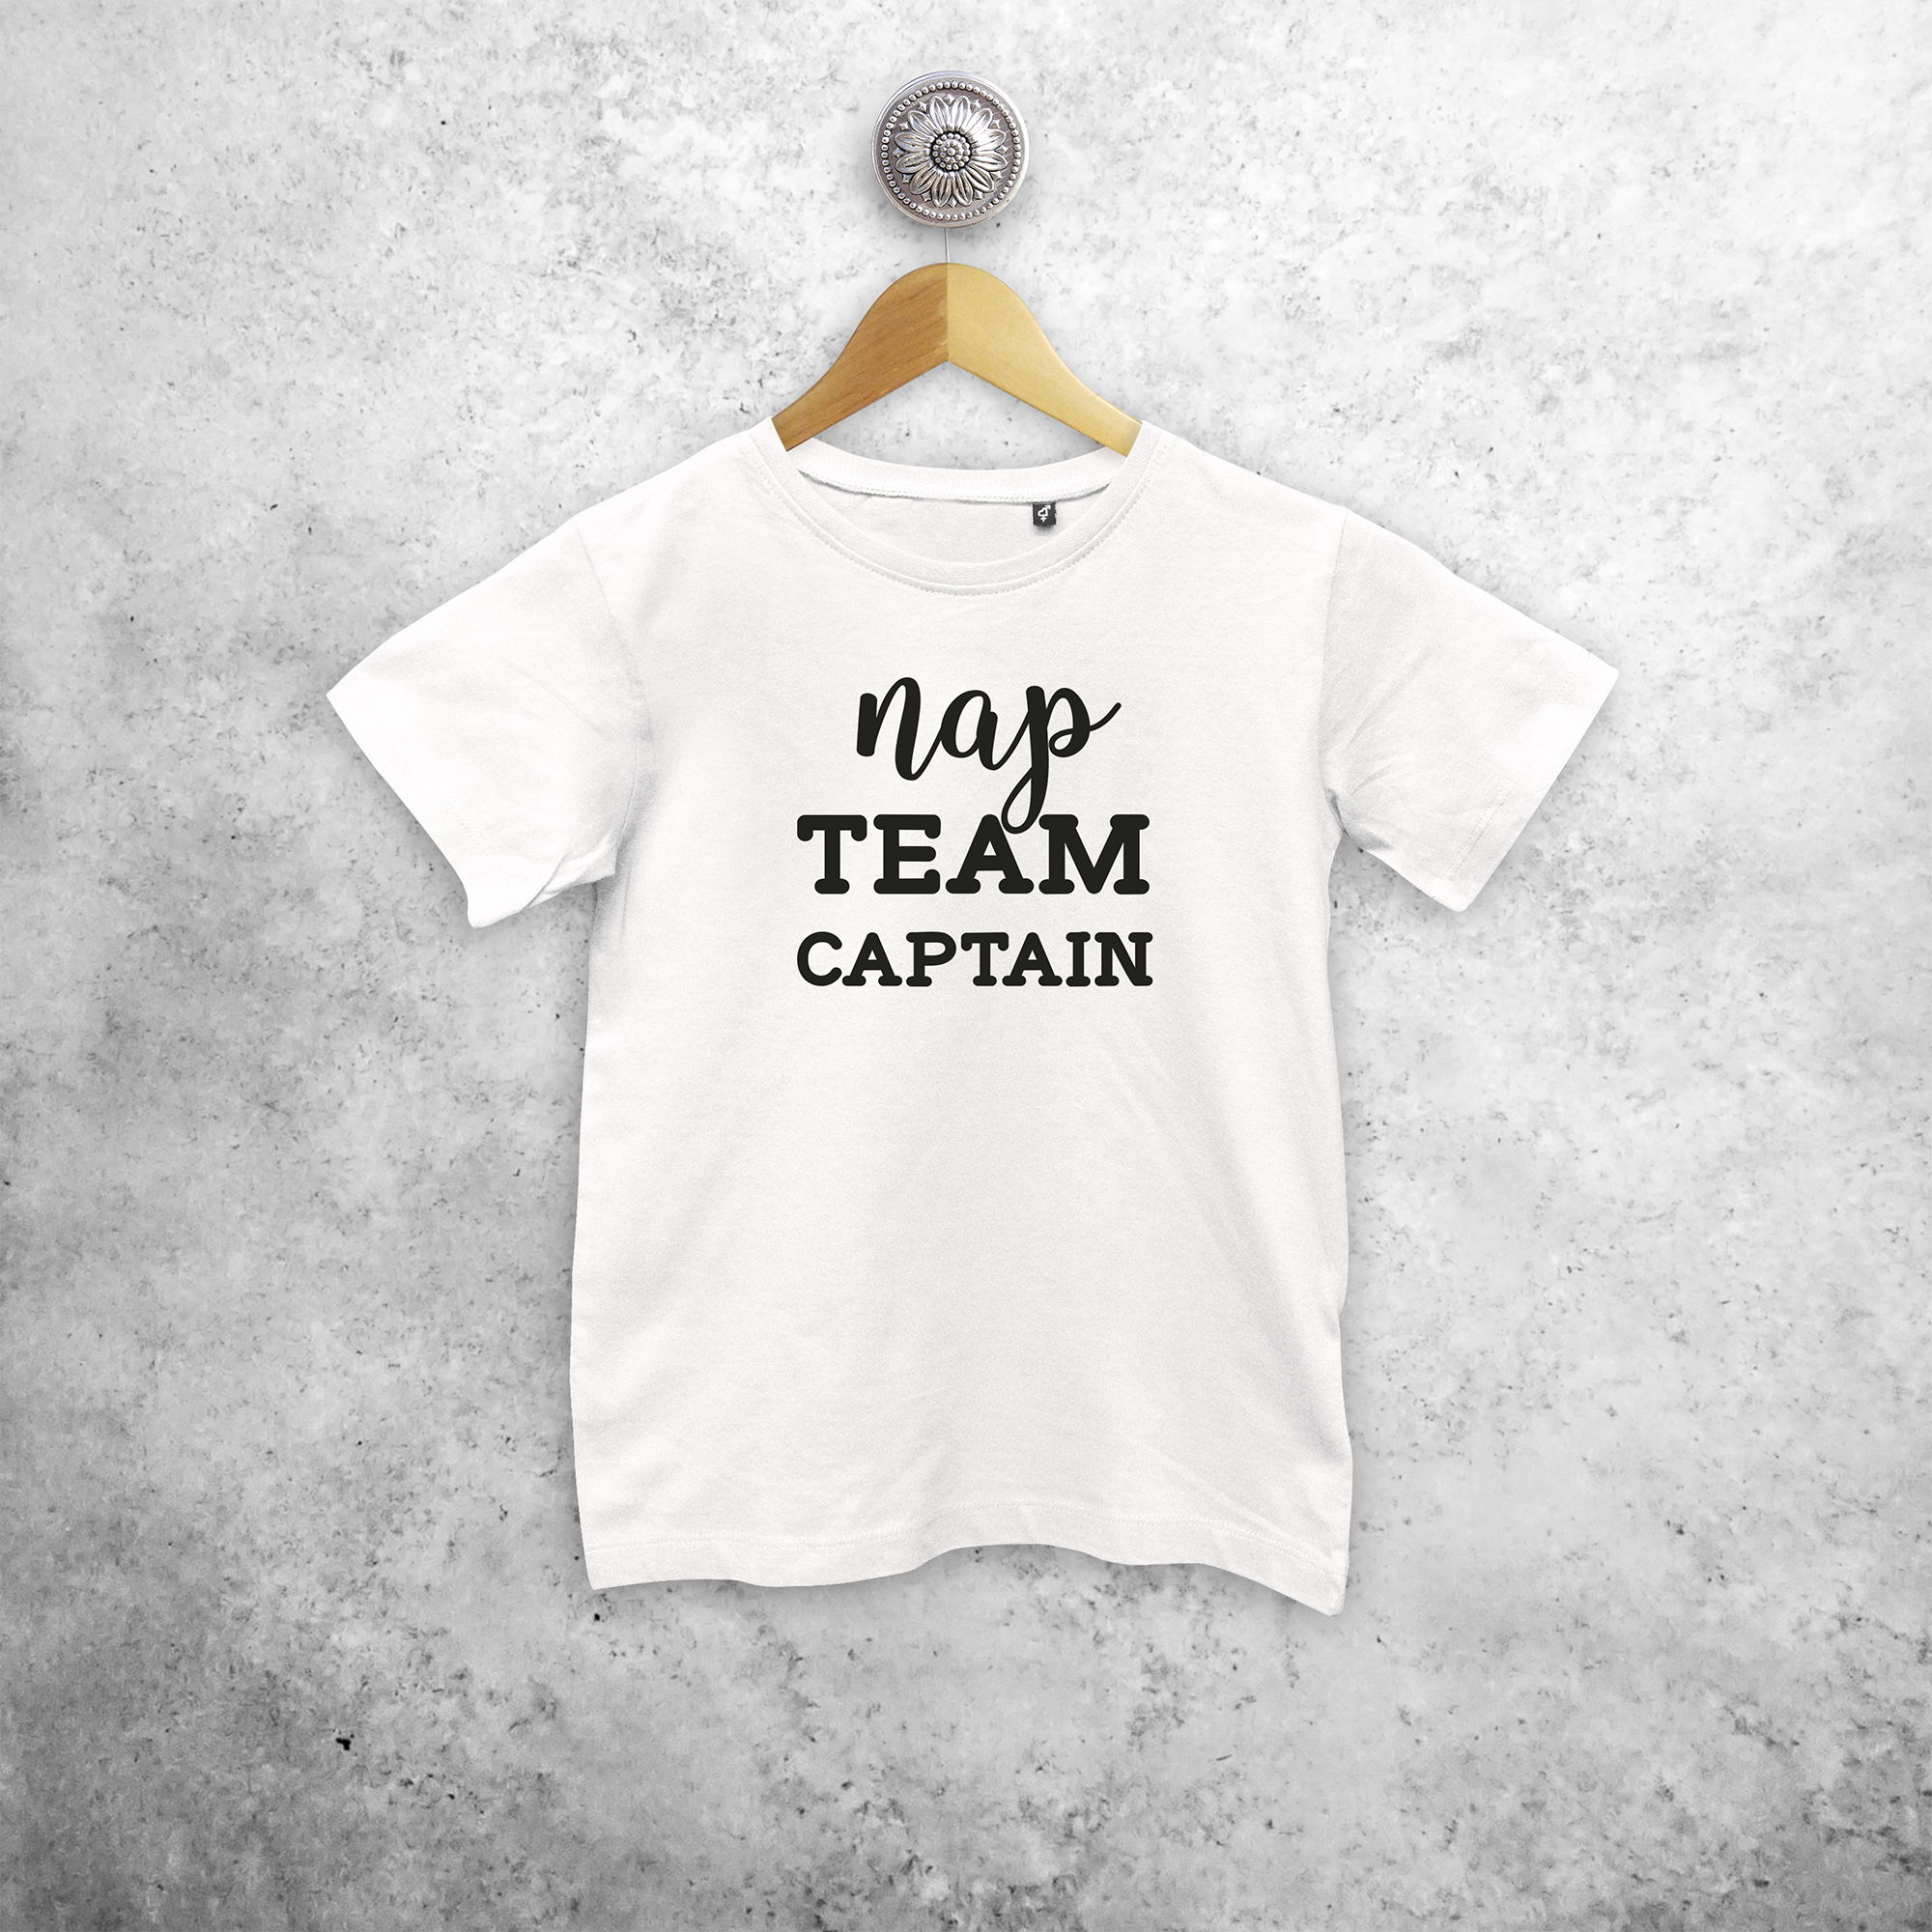 'Nap team captain' kids shortsleeve shirt